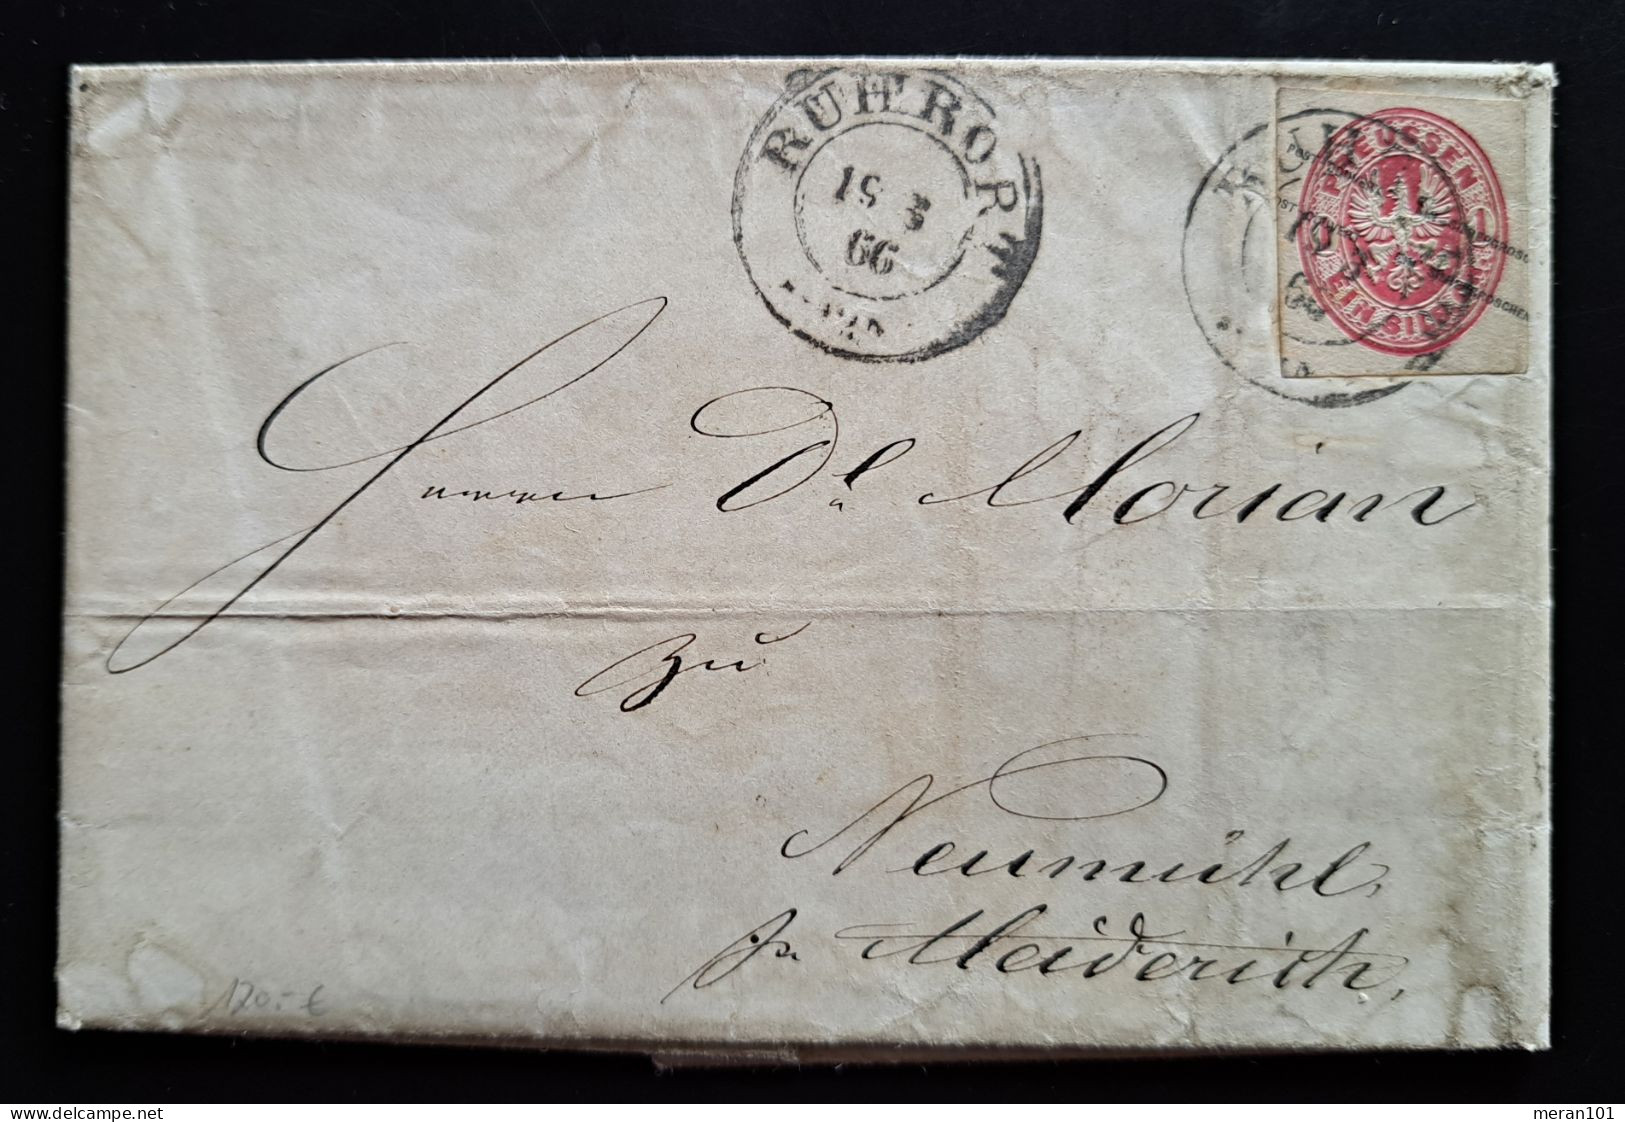 Preussen 1866, Brief Mit Inhalt ROHRORT, Ganzsachenausschnitt GAA15 - Briefe U. Dokumente